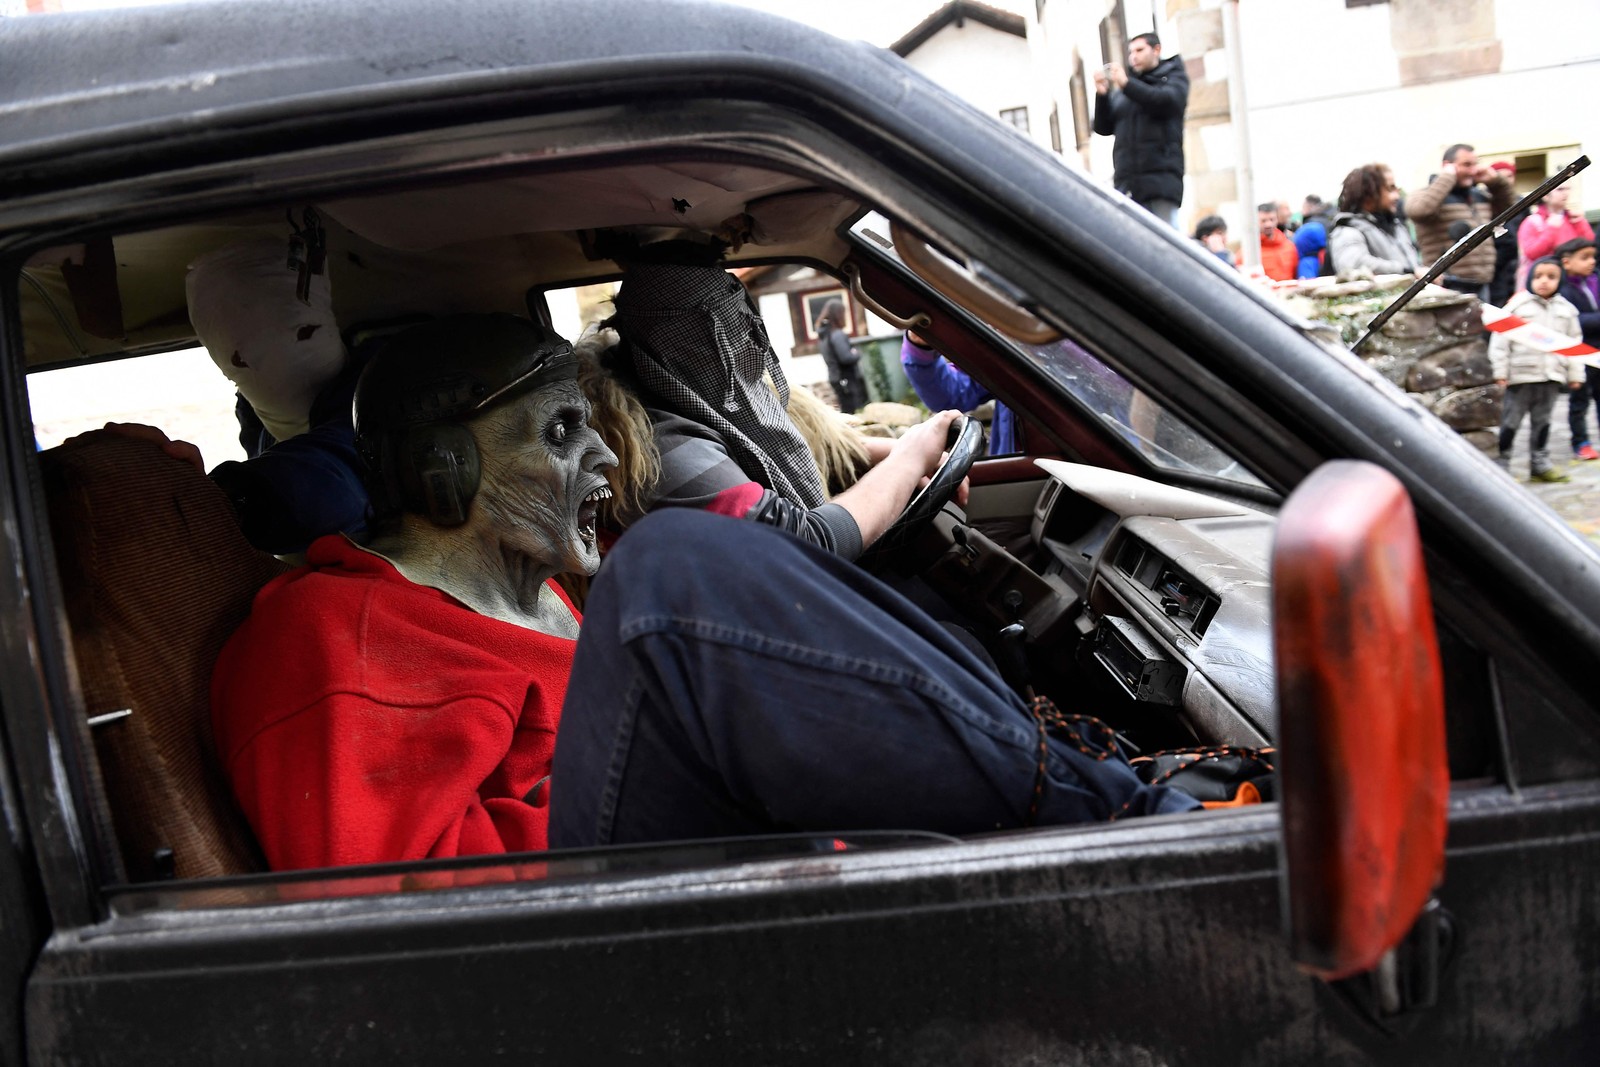 Foliões mascarados são vistos em um carro durante o tradicional carnaval de Ituren, na província de Navarra, no norte da Espanha — Foto: ANDER GILLENEA/AFP